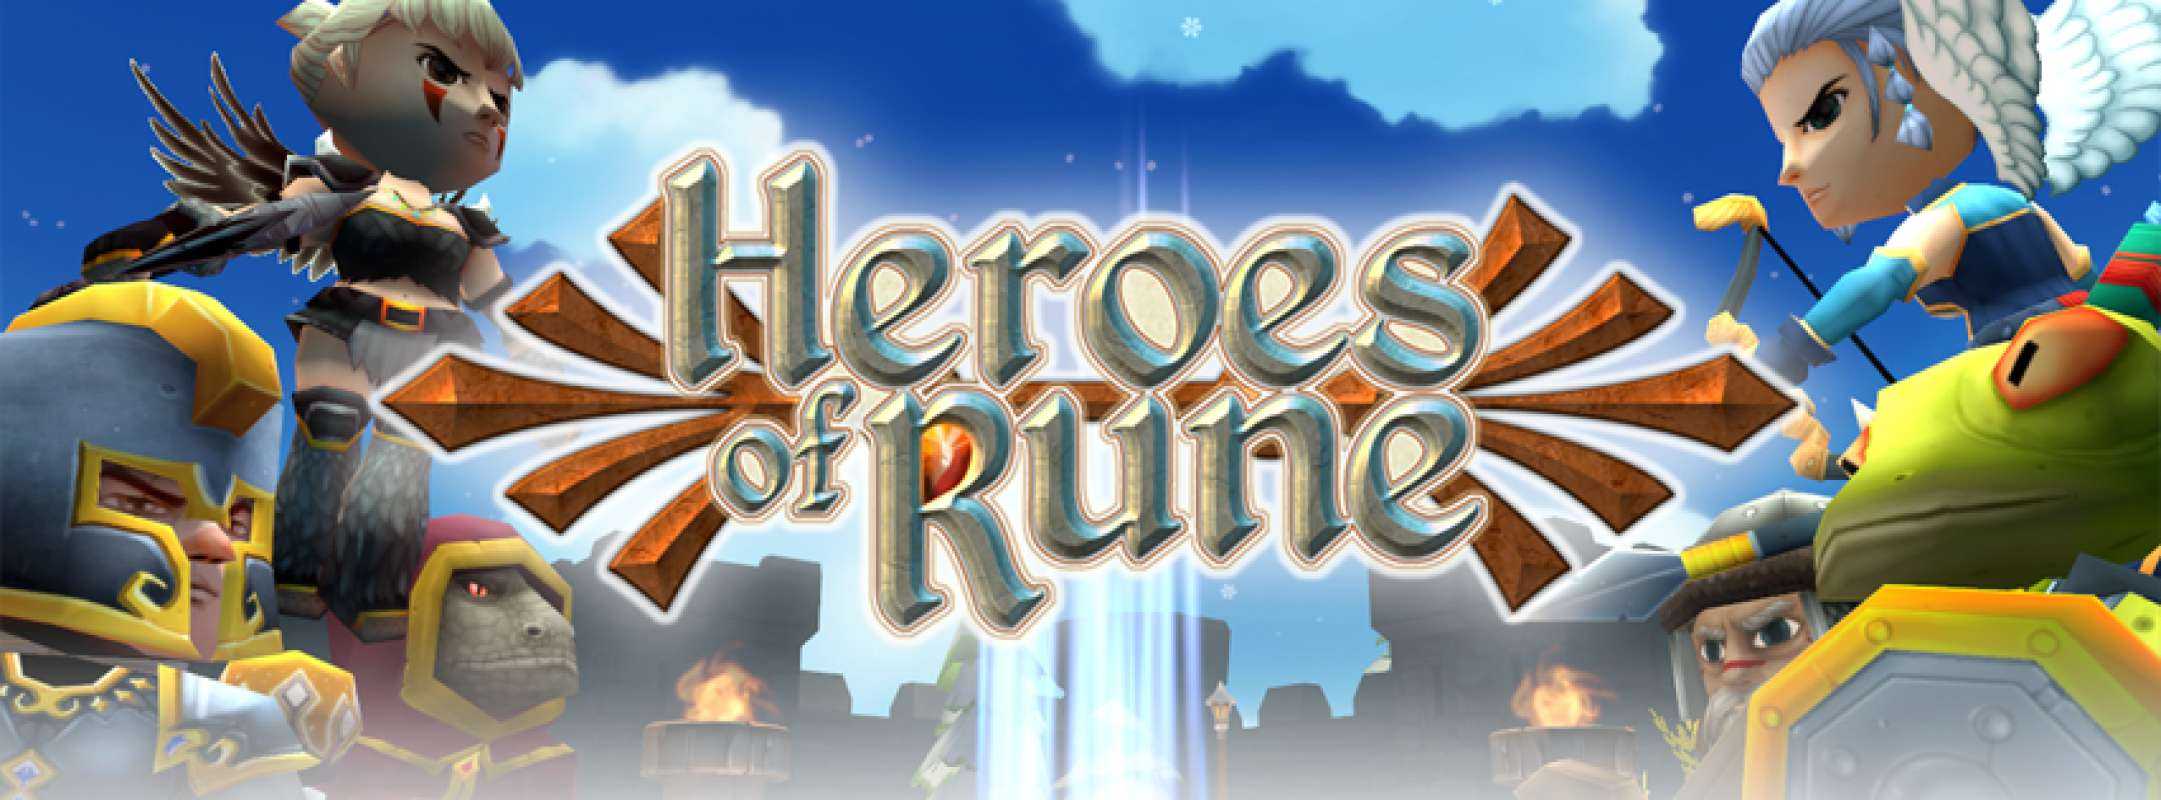 Heroes of Rune